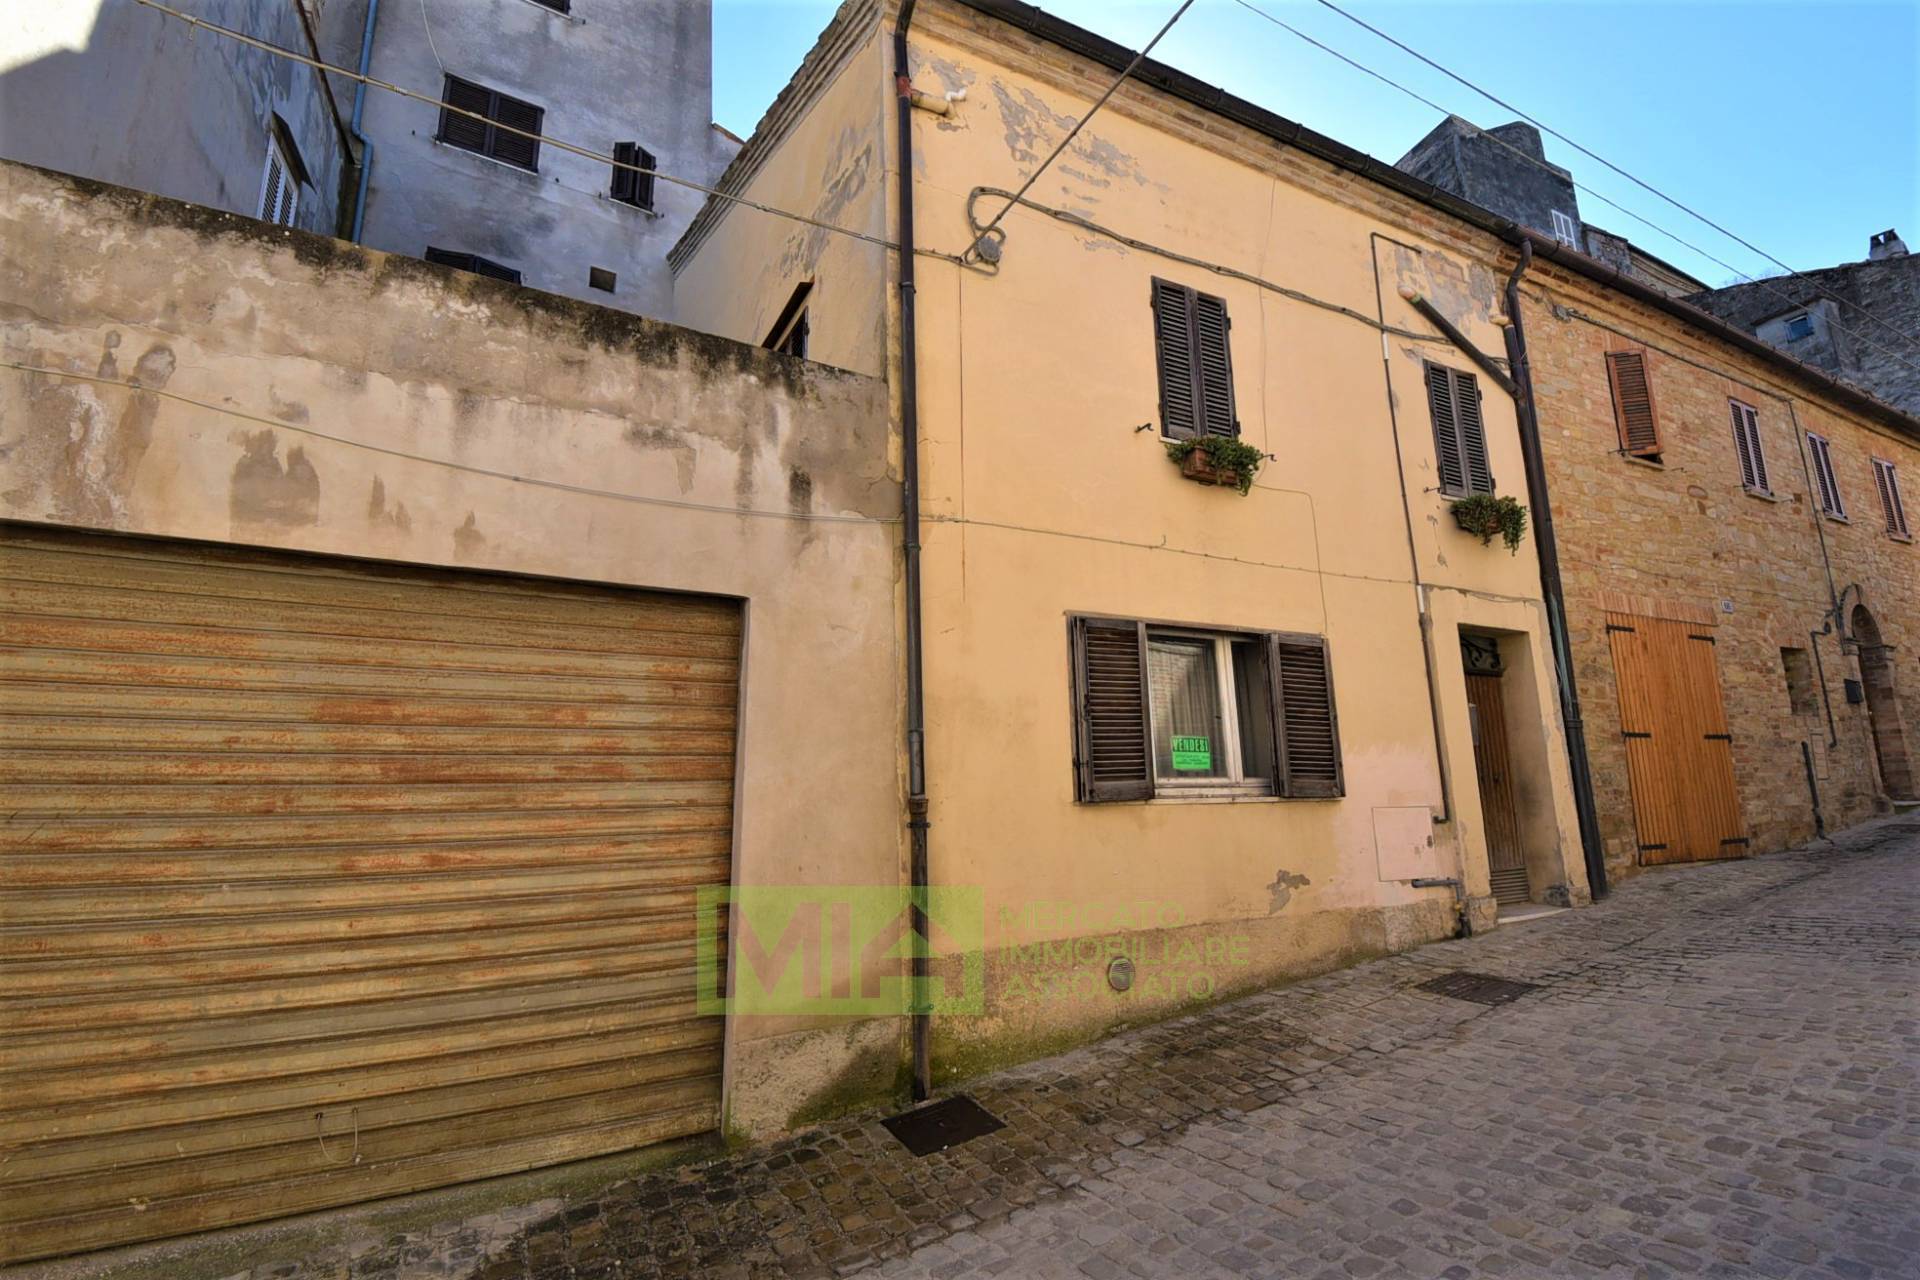 Soluzione Indipendente in vendita a Santa Vittoria in Matenano, 6 locali, zona Località: Centro, prezzo € 50.000 | PortaleAgenzieImmobiliari.it